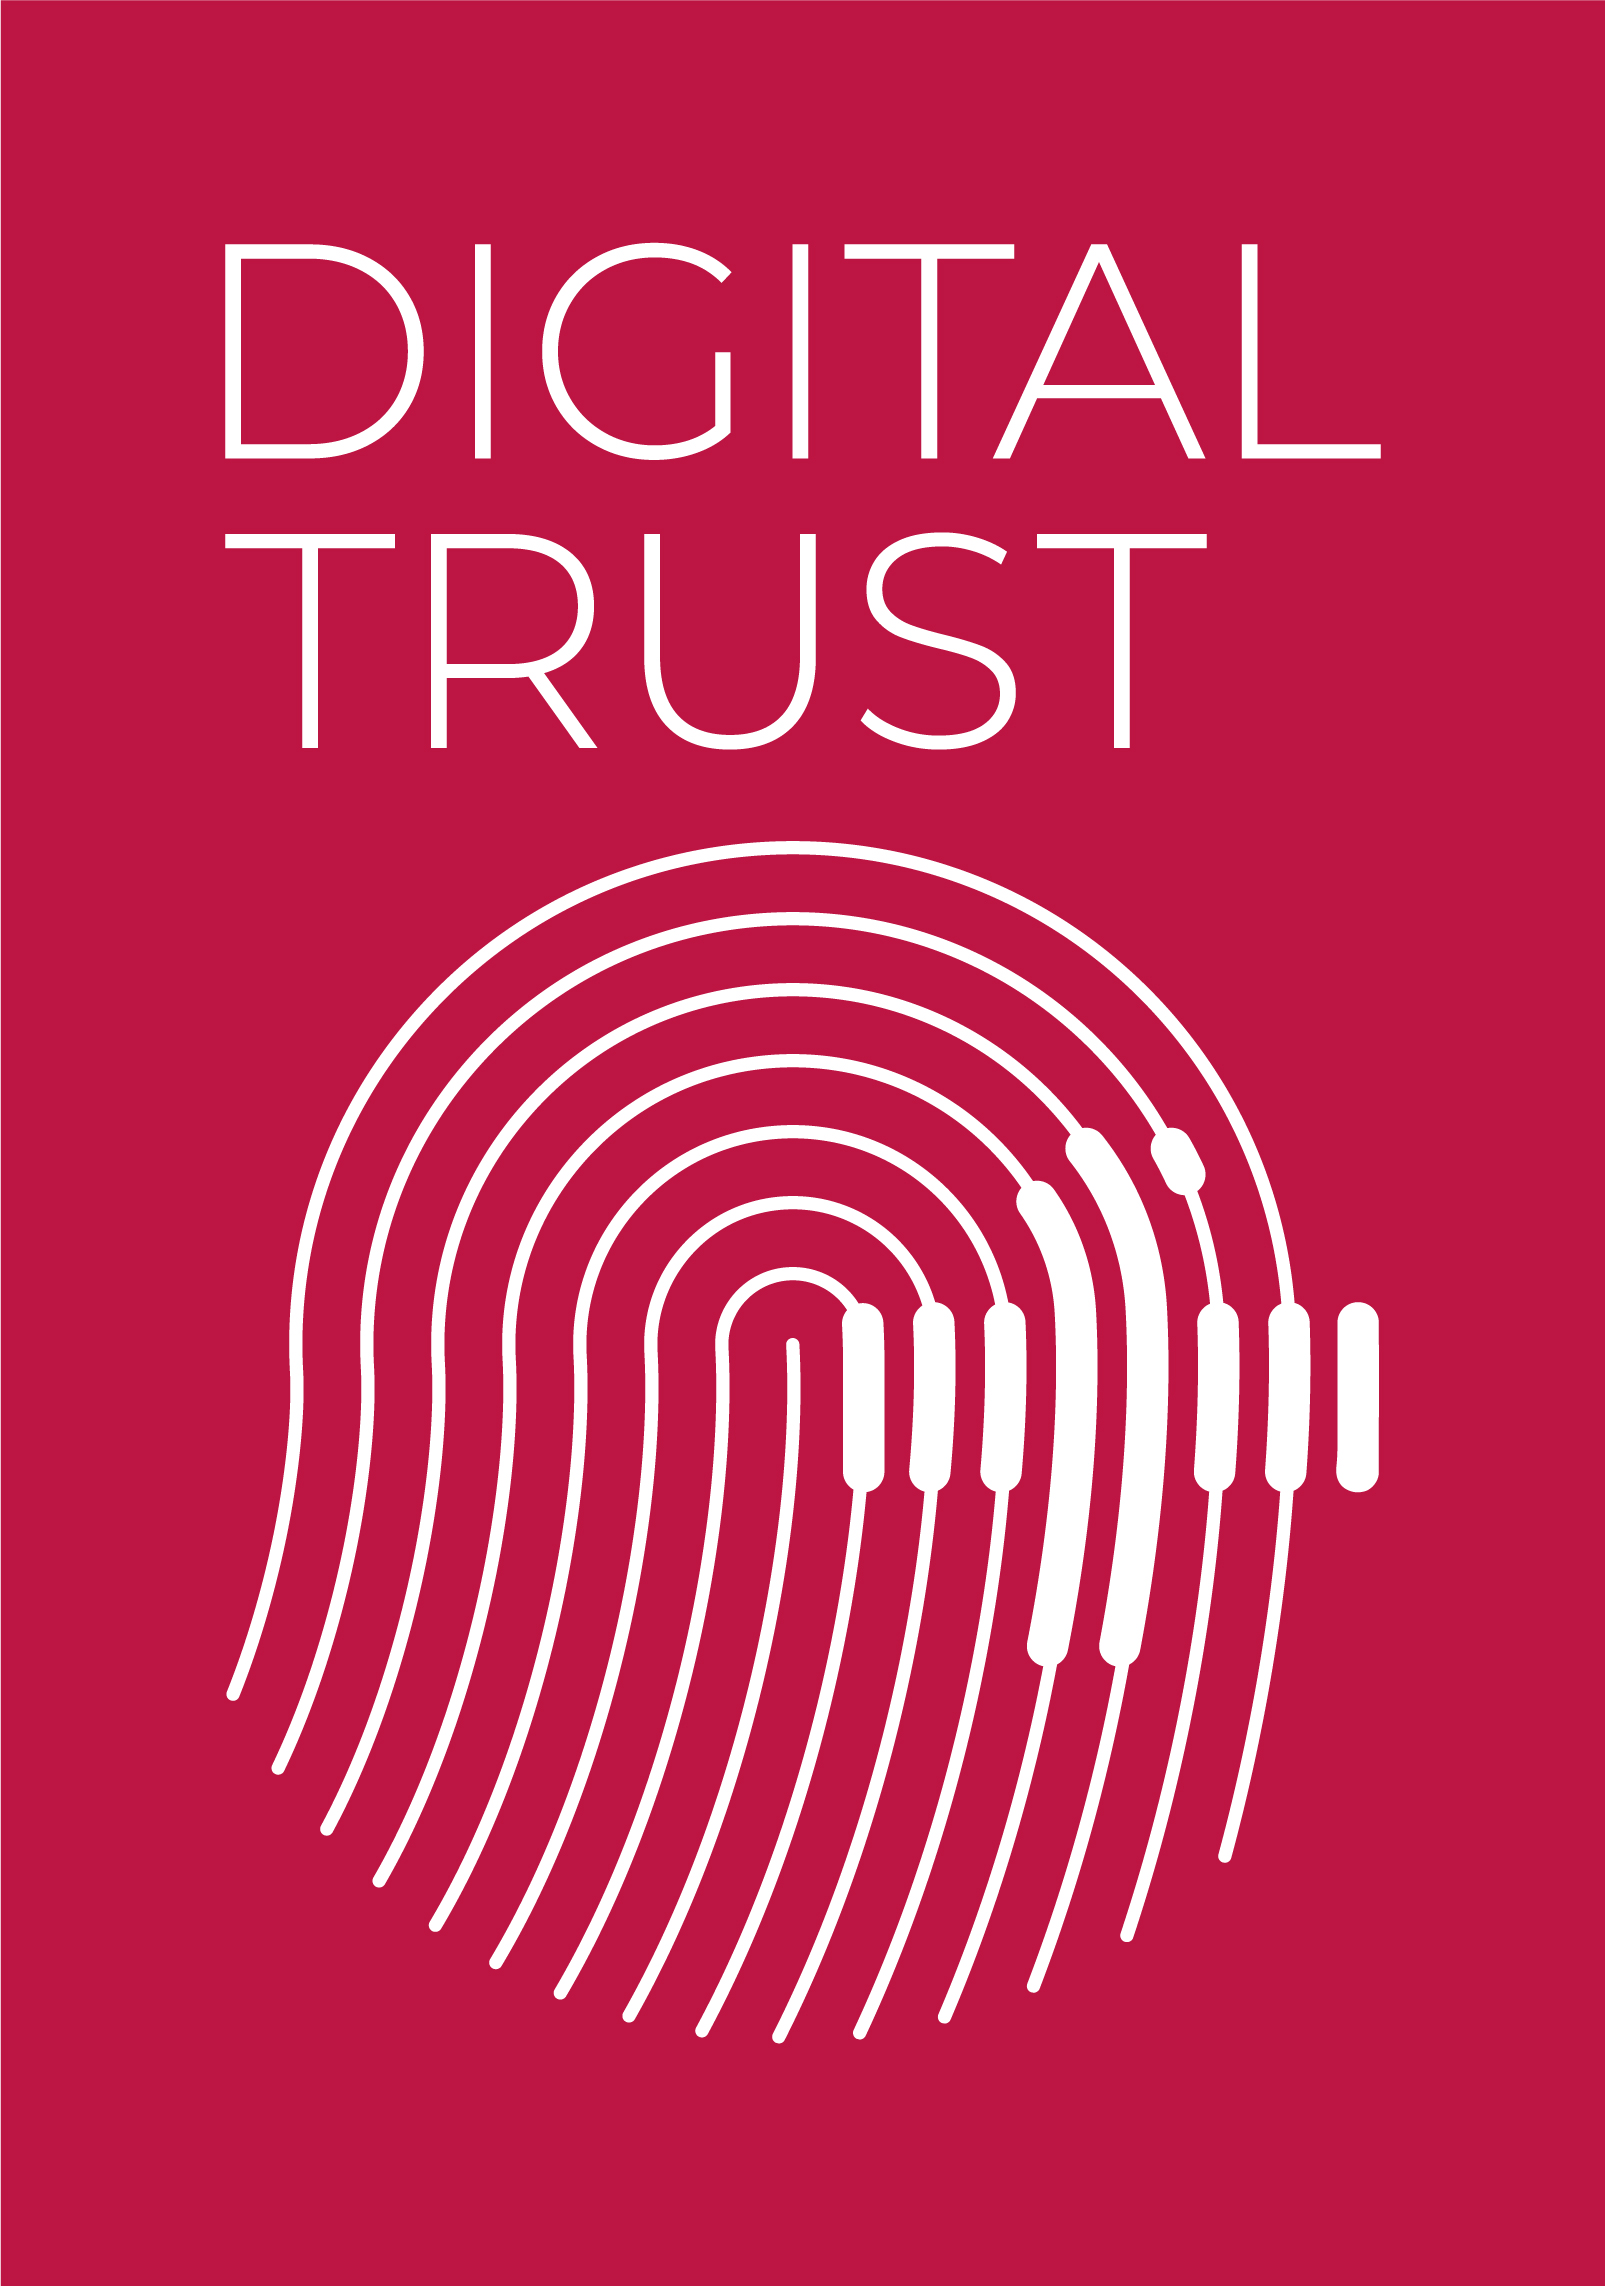 デジタル分野での説明責任を追求するためにスイスで立ち上げられた、縦長の長方形の「デジタル信頼ラベル」